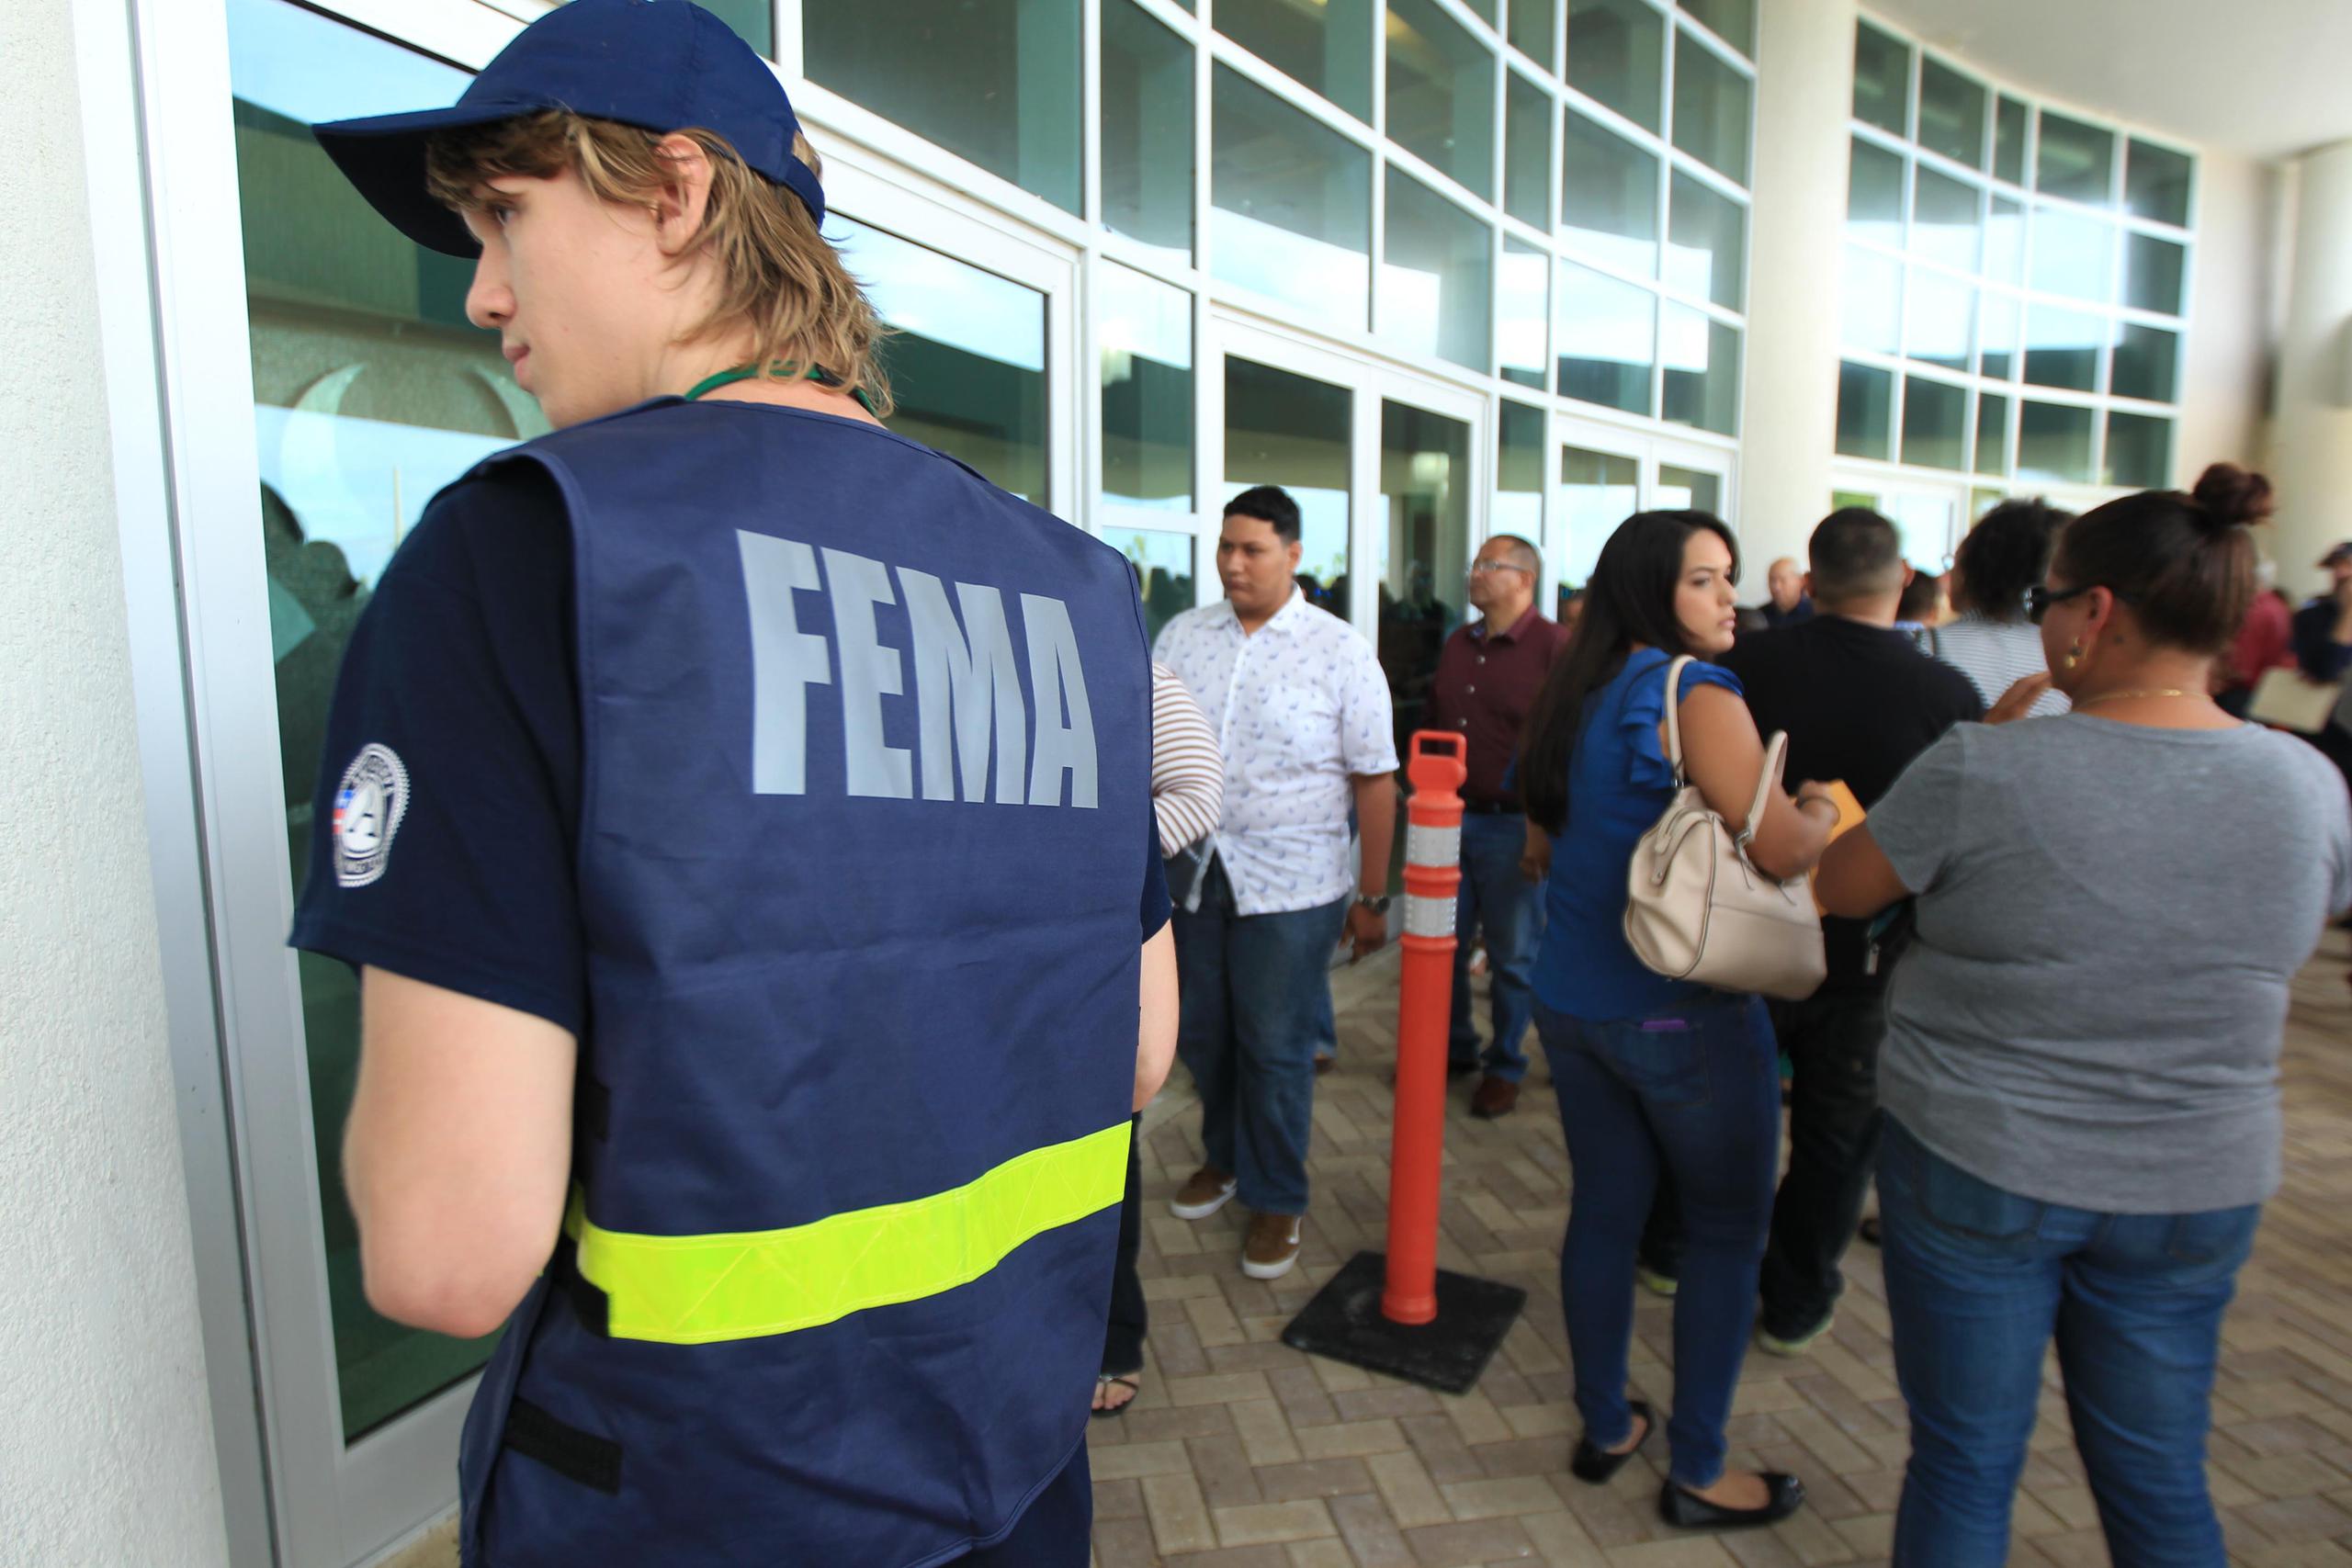 FEMA solicitó que se excluya a sus empleados asignados a tareas de desastre, si fuera necesario un cierre parcial.